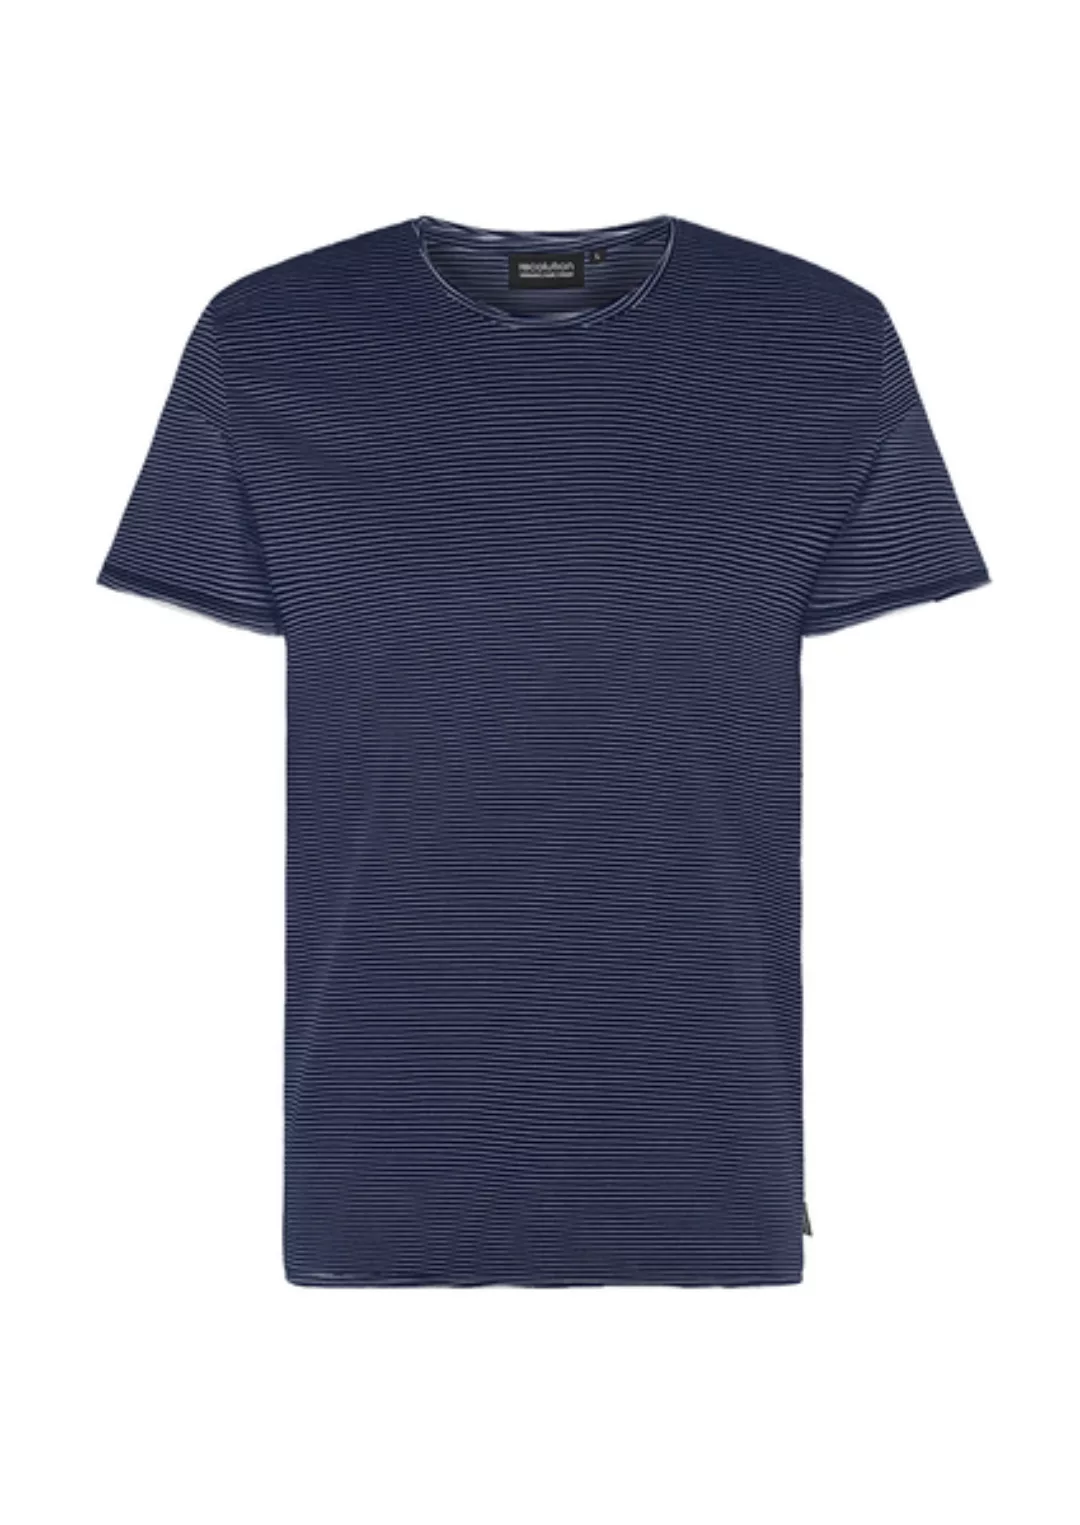 Gestreiftes Herren T-shirt Aus Baumwolle (Bio) Navy/weiß | Casual T-shirt # günstig online kaufen